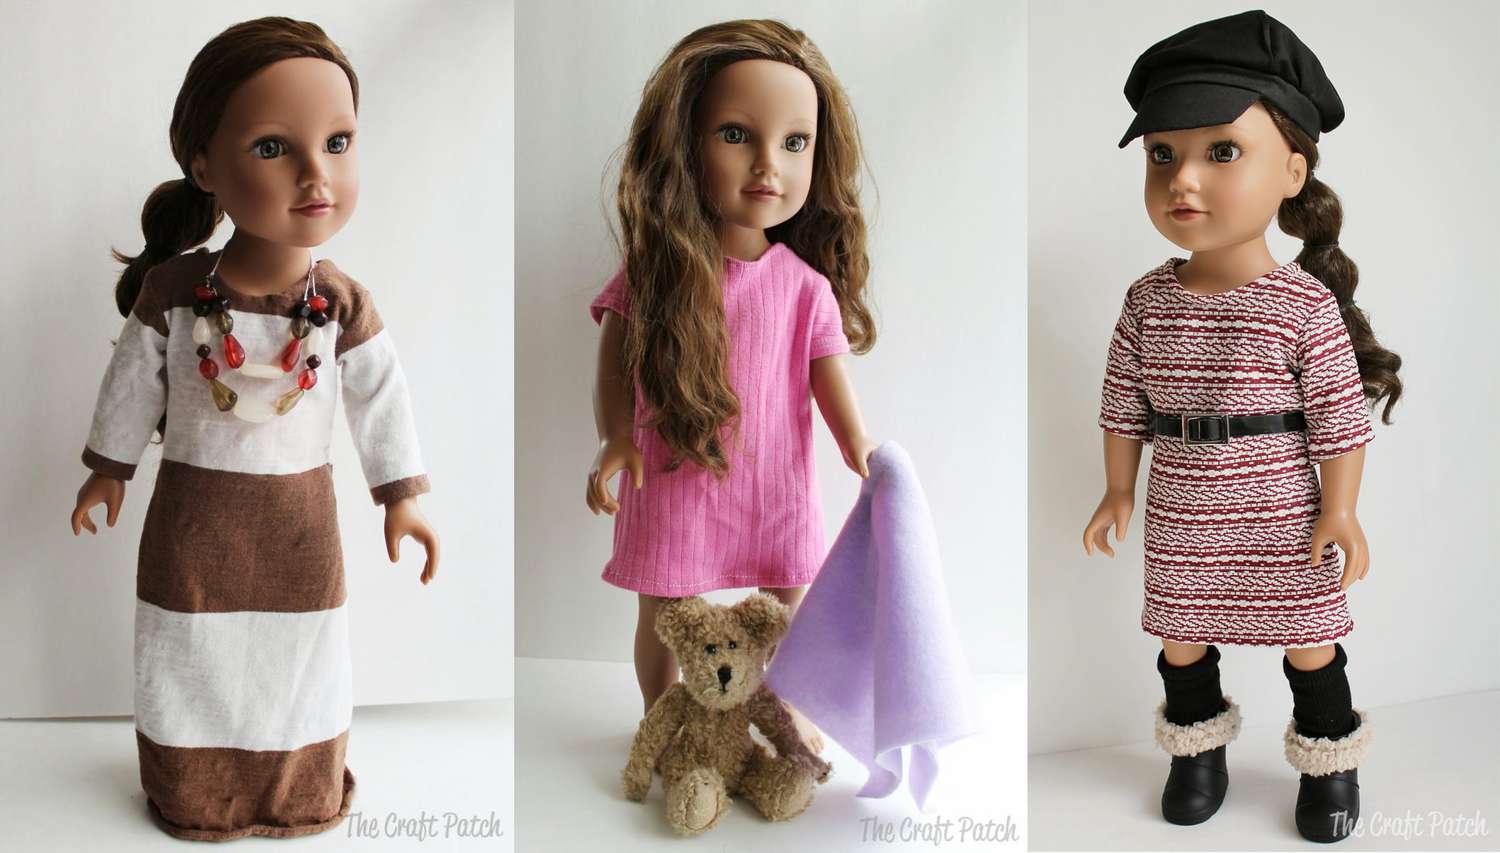 基本针织服装模式18英寸三娃娃玩偶